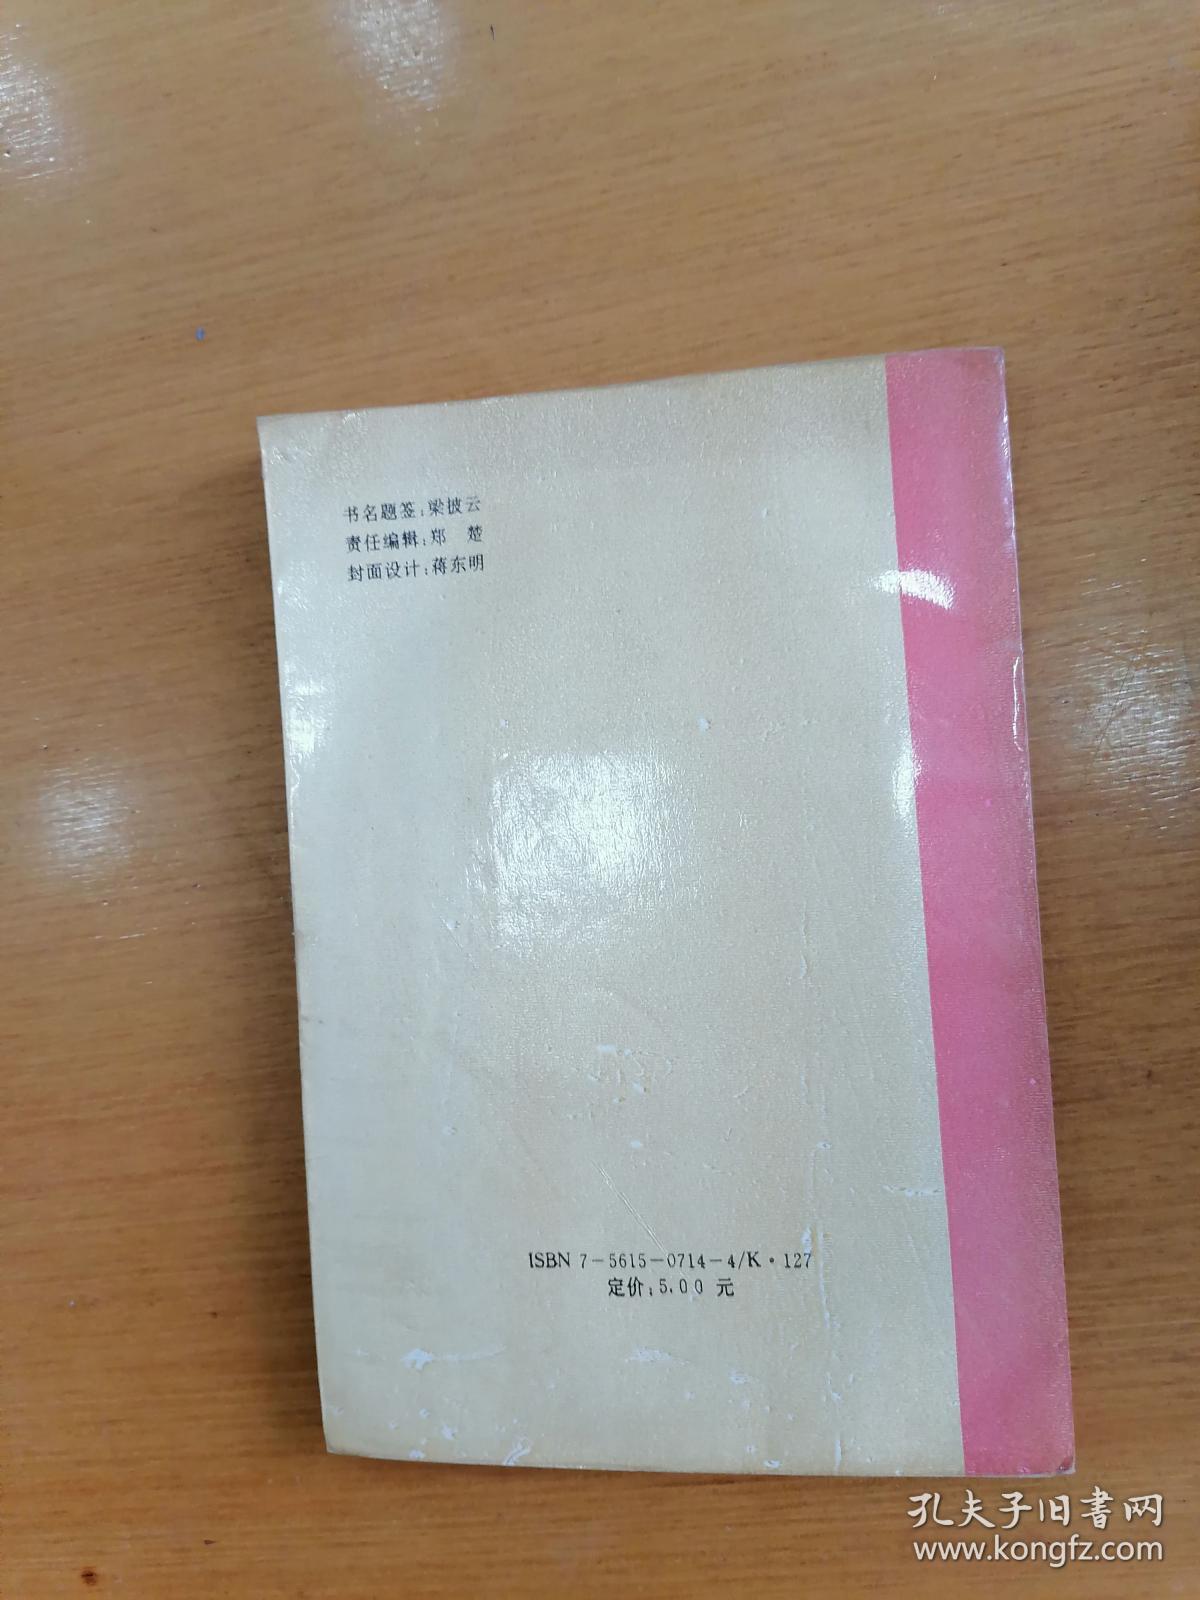 吴诗池著   中国人的婚姻观与婚俗   1993年1版1印仅印3000册，九品强